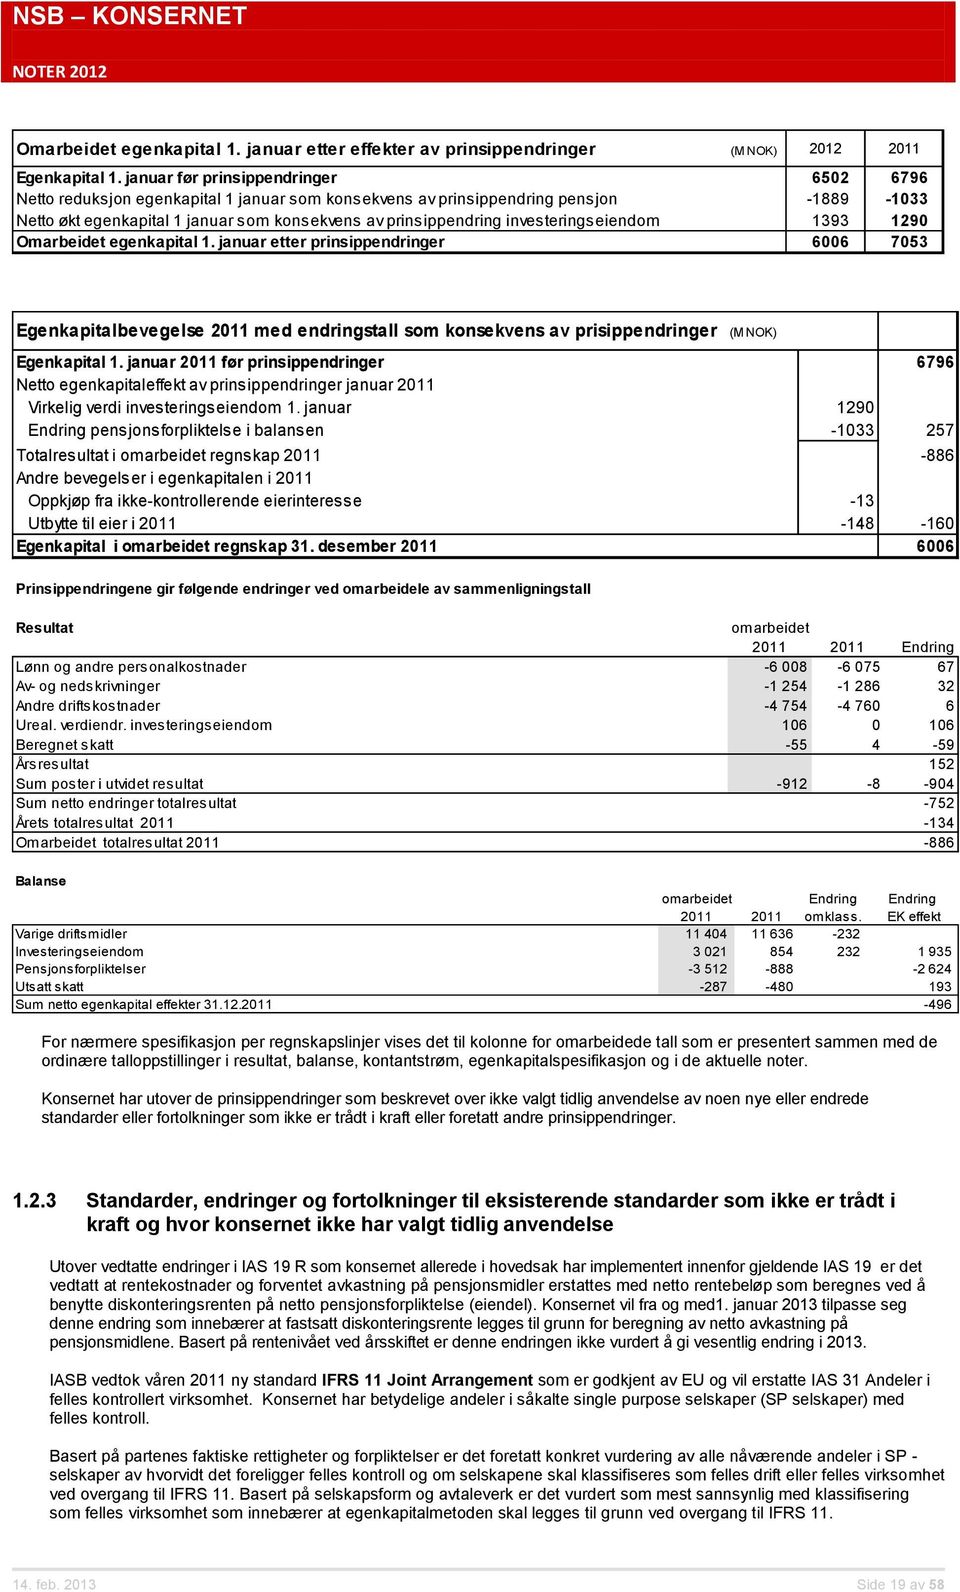 investeringseiendom 1393 1290 Omarbeidet egenkapital 1. januar etter prinsippendringer 6006 7053 Egenkapitalbevegelse 2011 med endringstall som konsekvens av prisippendringer (M NOK) Egenkapital 1.